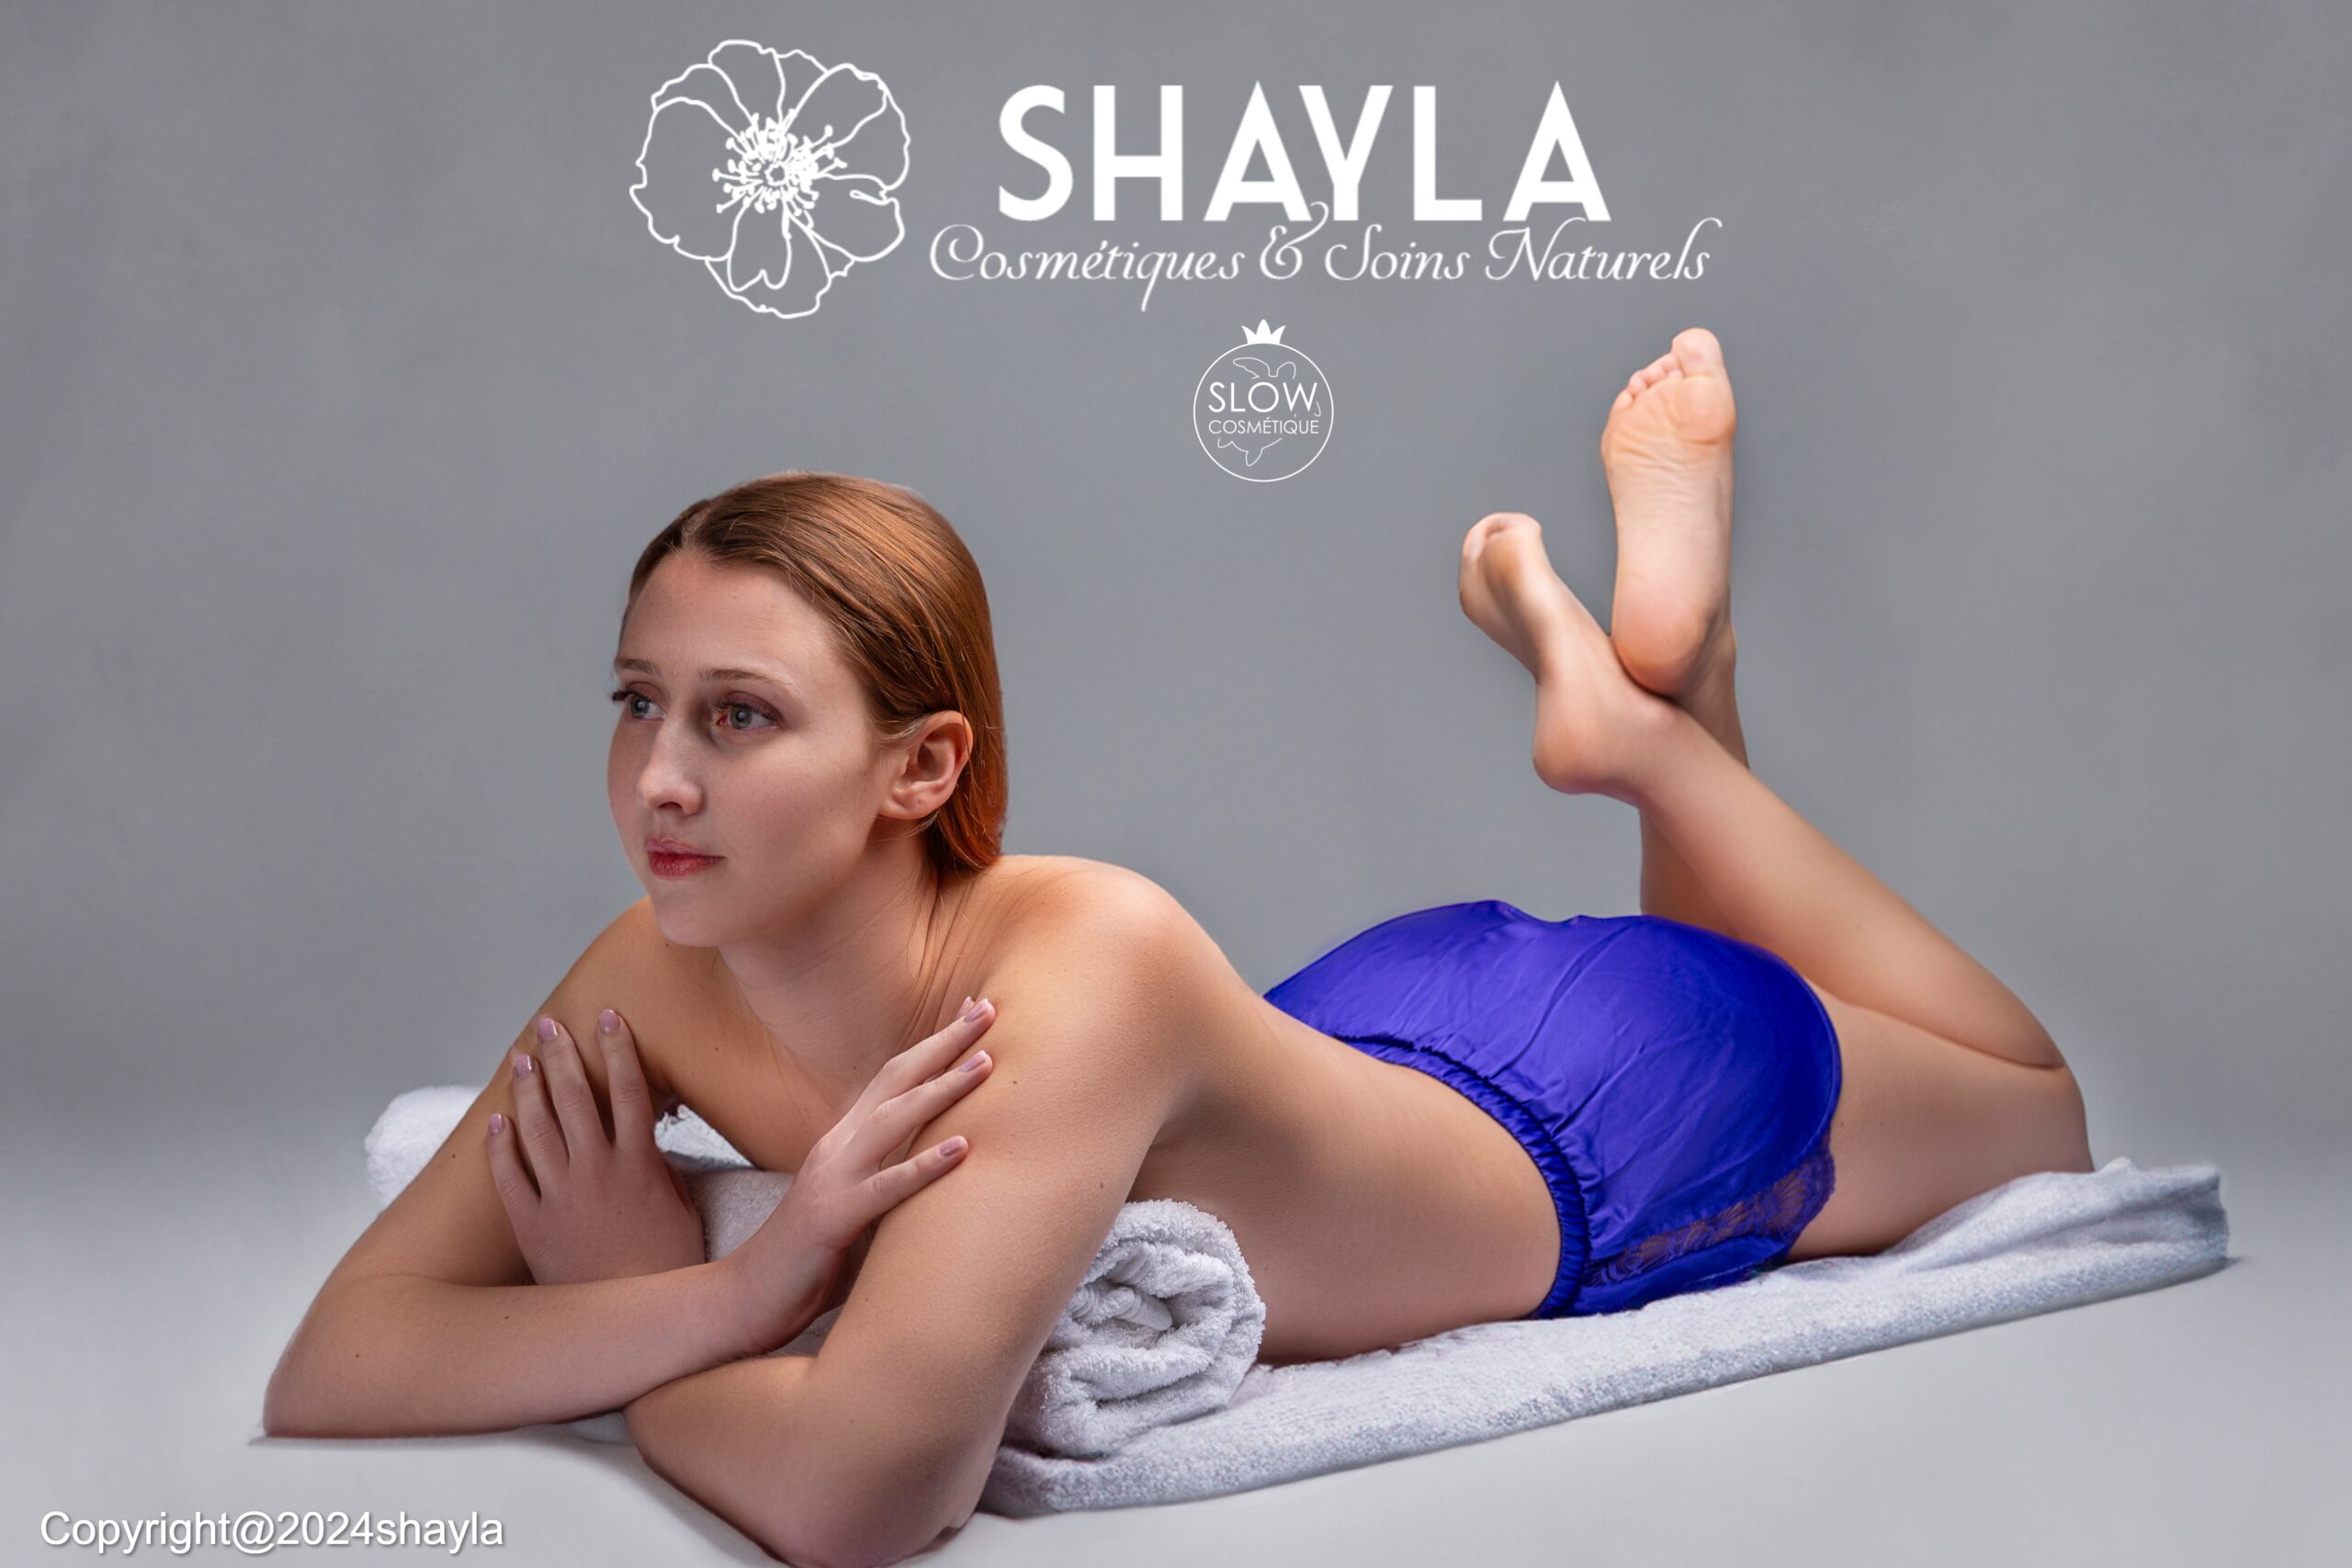 Shayla cosmetiques naturels belge - Belgique -soins naturels visage et corps et d hygiene(2)labellise slow cosmetiquel (1)